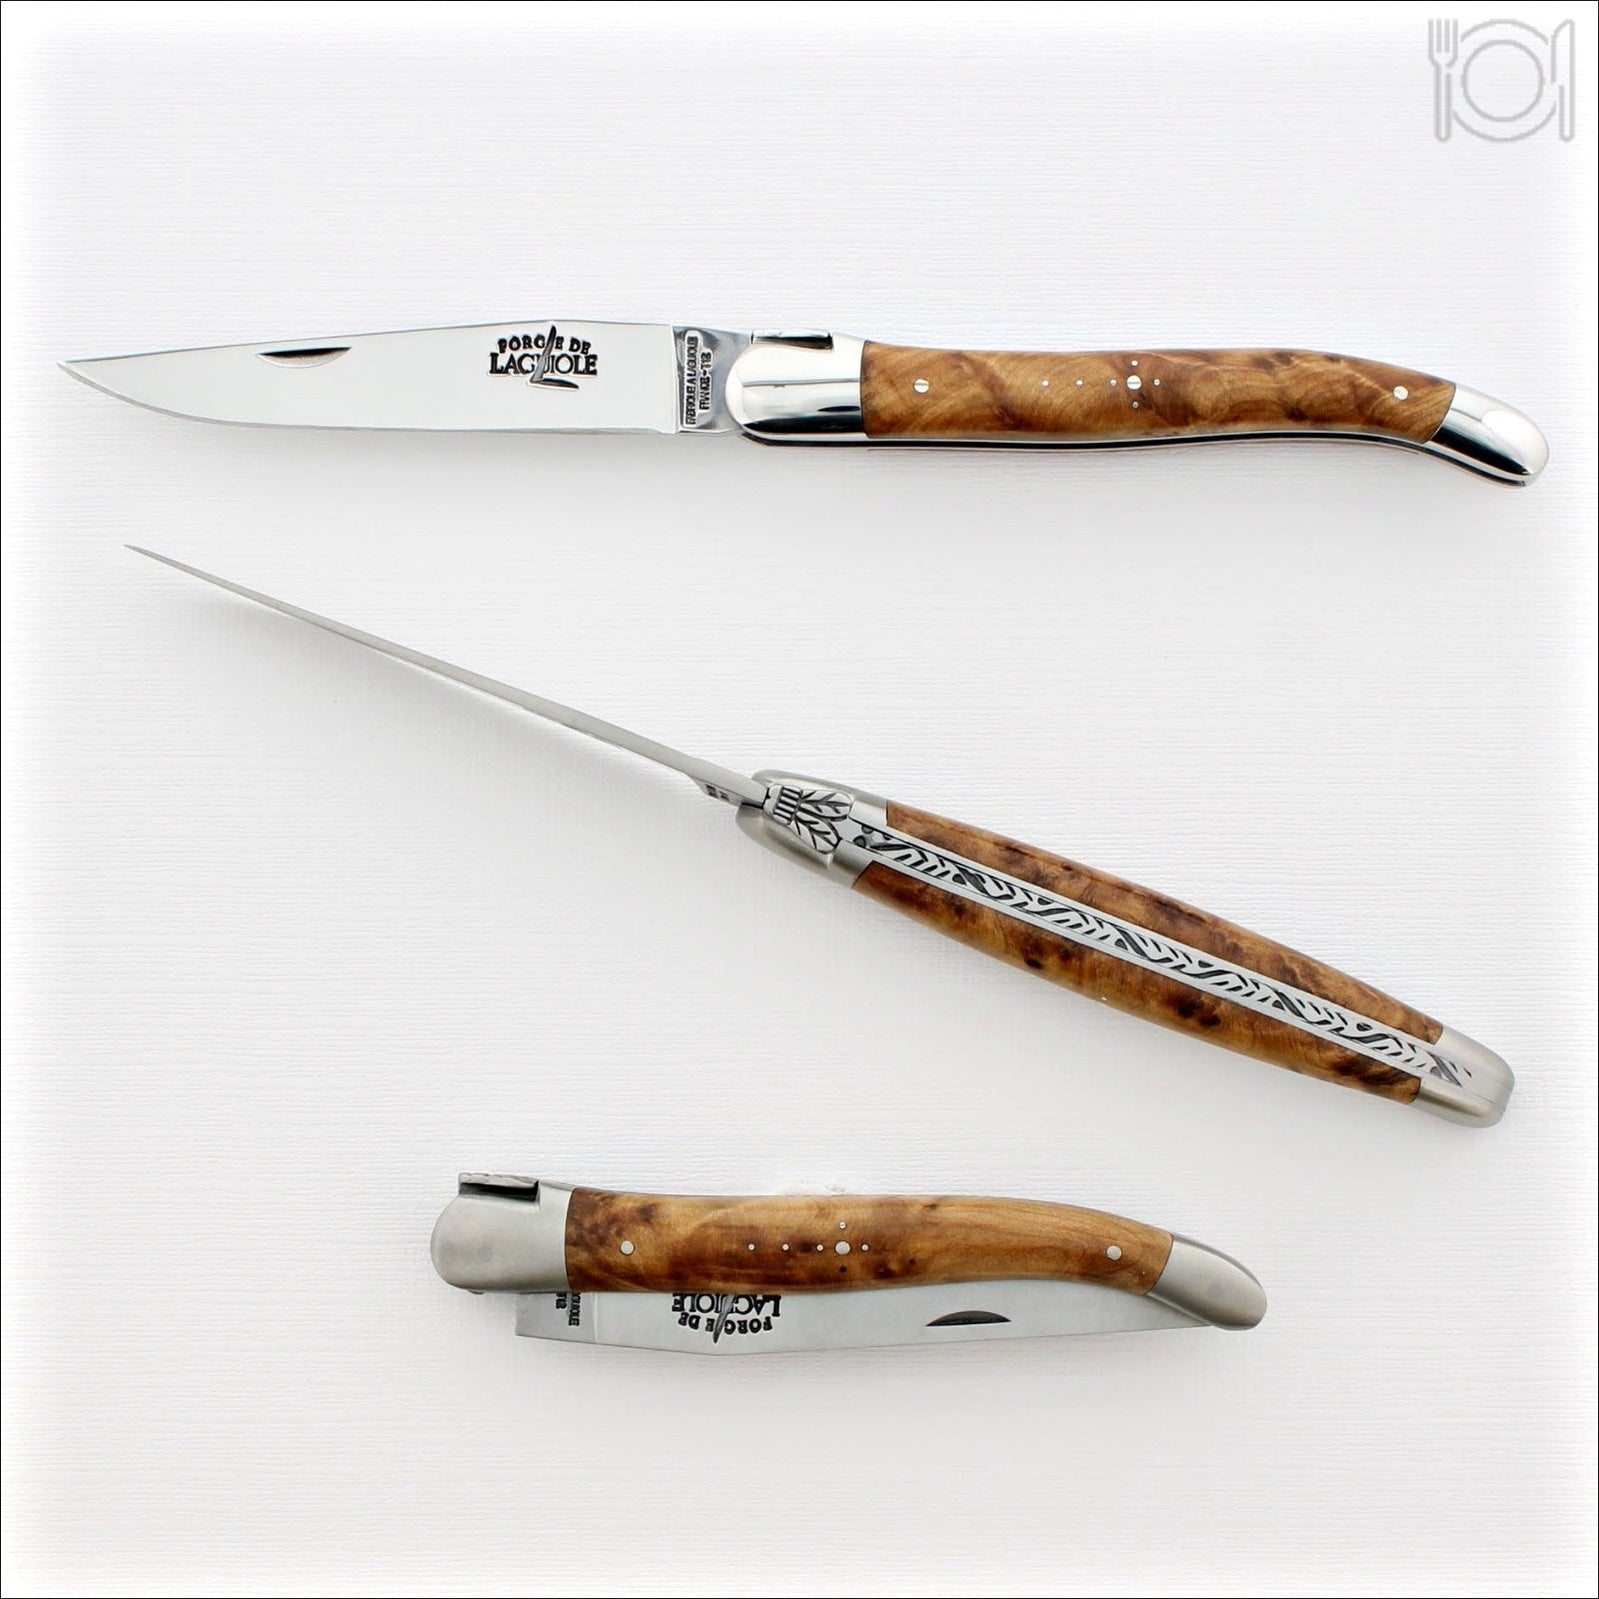 Trappeur Leather Sheath for 11 cm Laguiole Pocket Knife - Laguiole